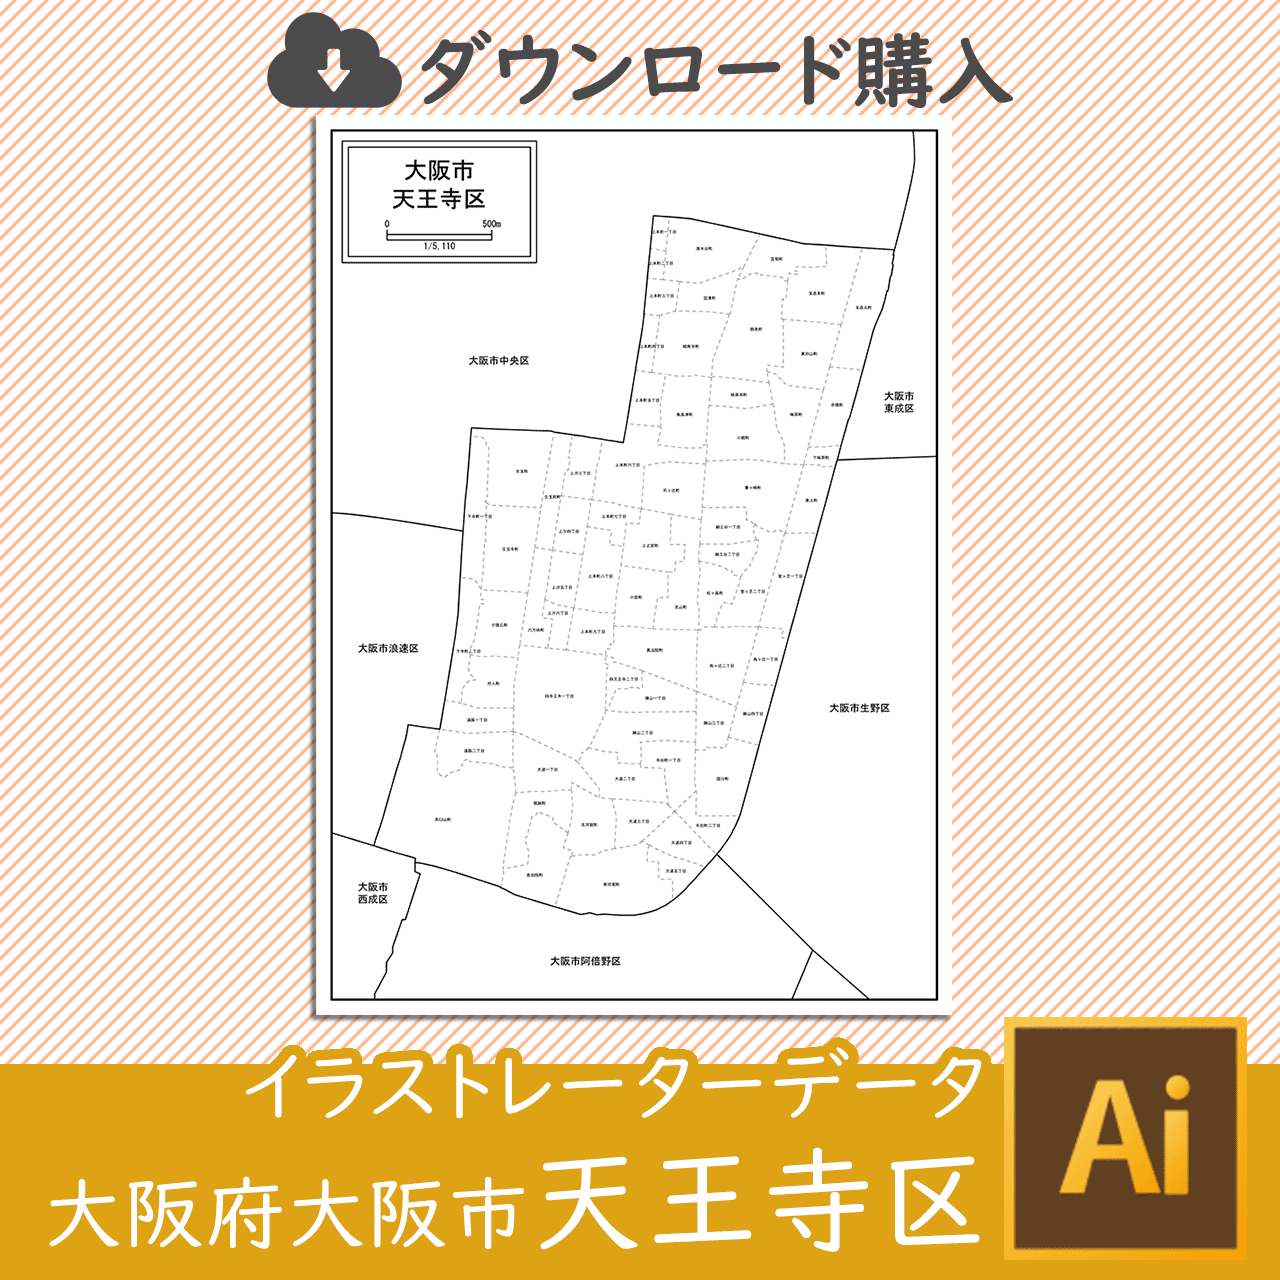 大阪市天王寺区のaiデータのサムネイル画像